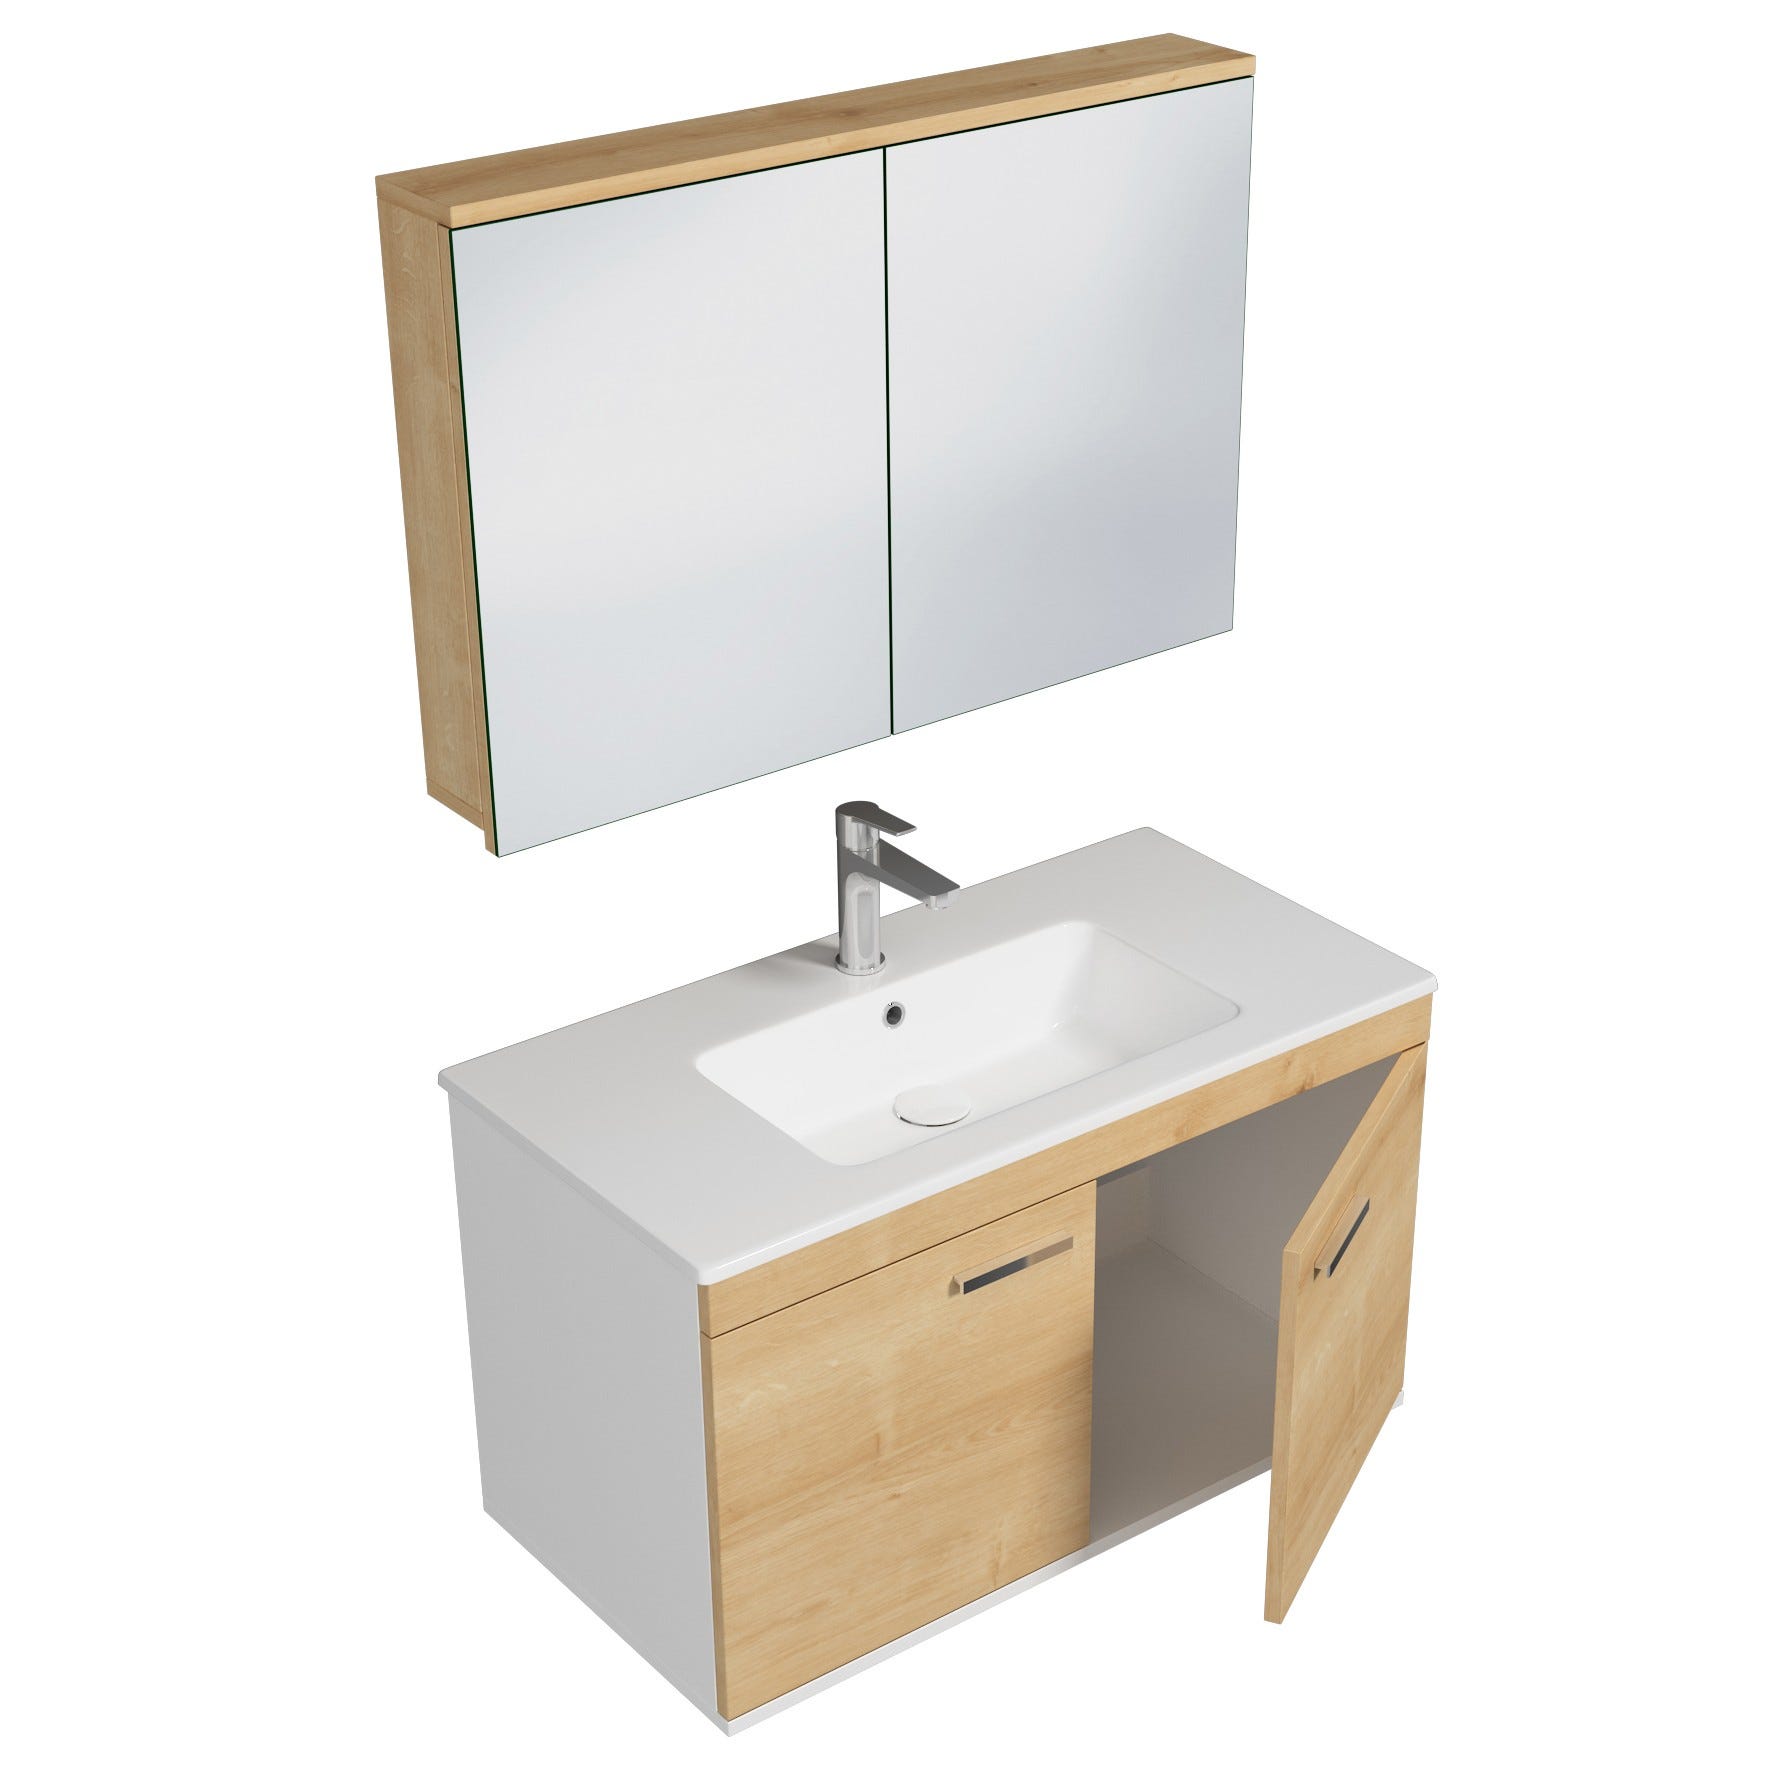 RUBITE Meuble salle de bain simple vasque 2 portes chêne clair largeur 90 cm + miroir armoire 1